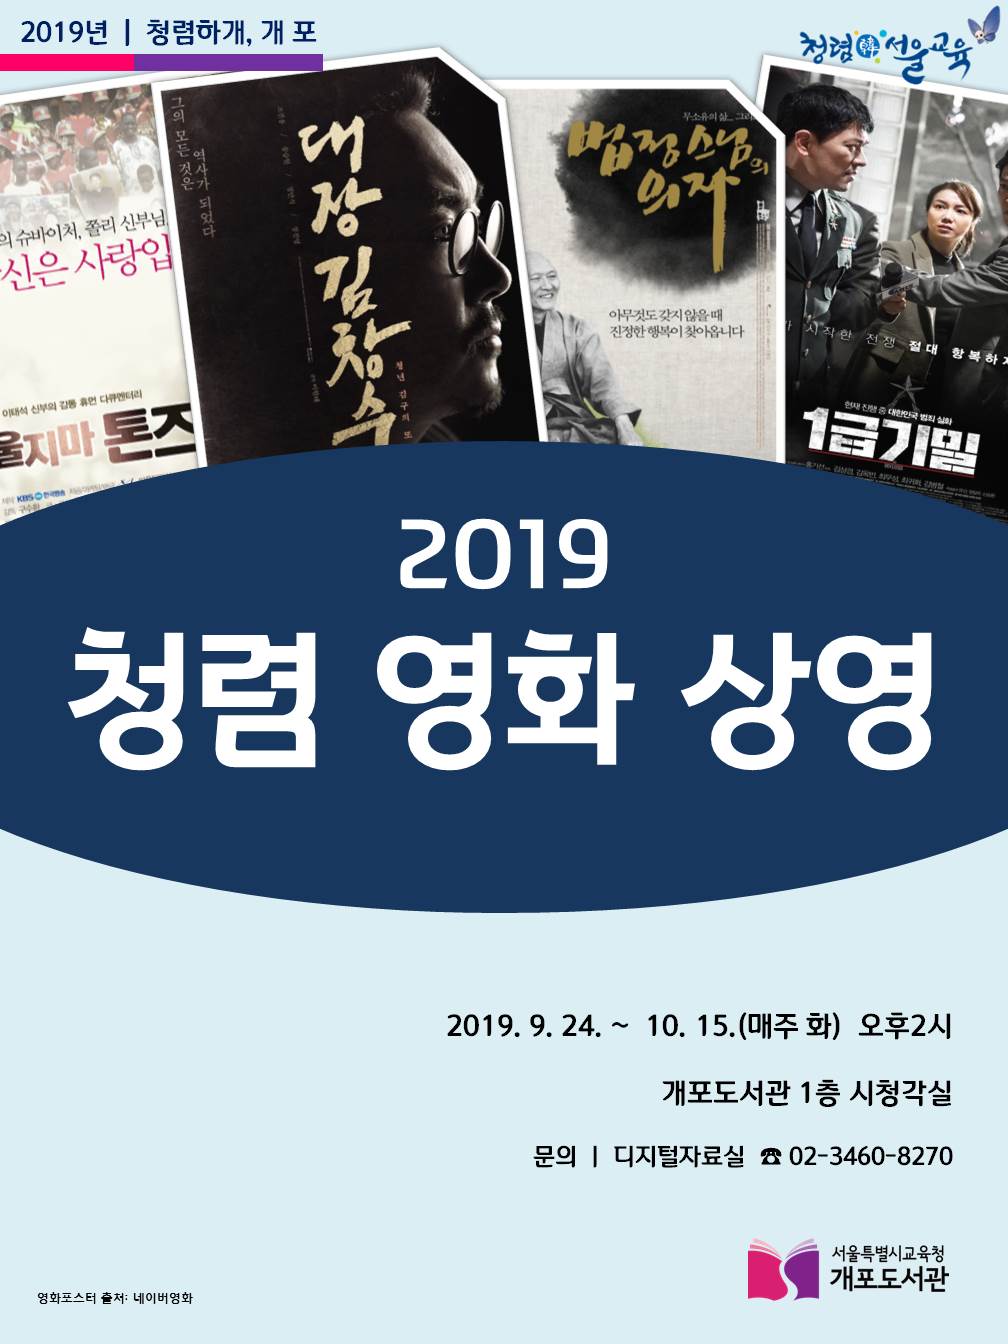 [서울특별시교육청개포도서관] 2019년 「청렴 영화 상영」 안내 포스터